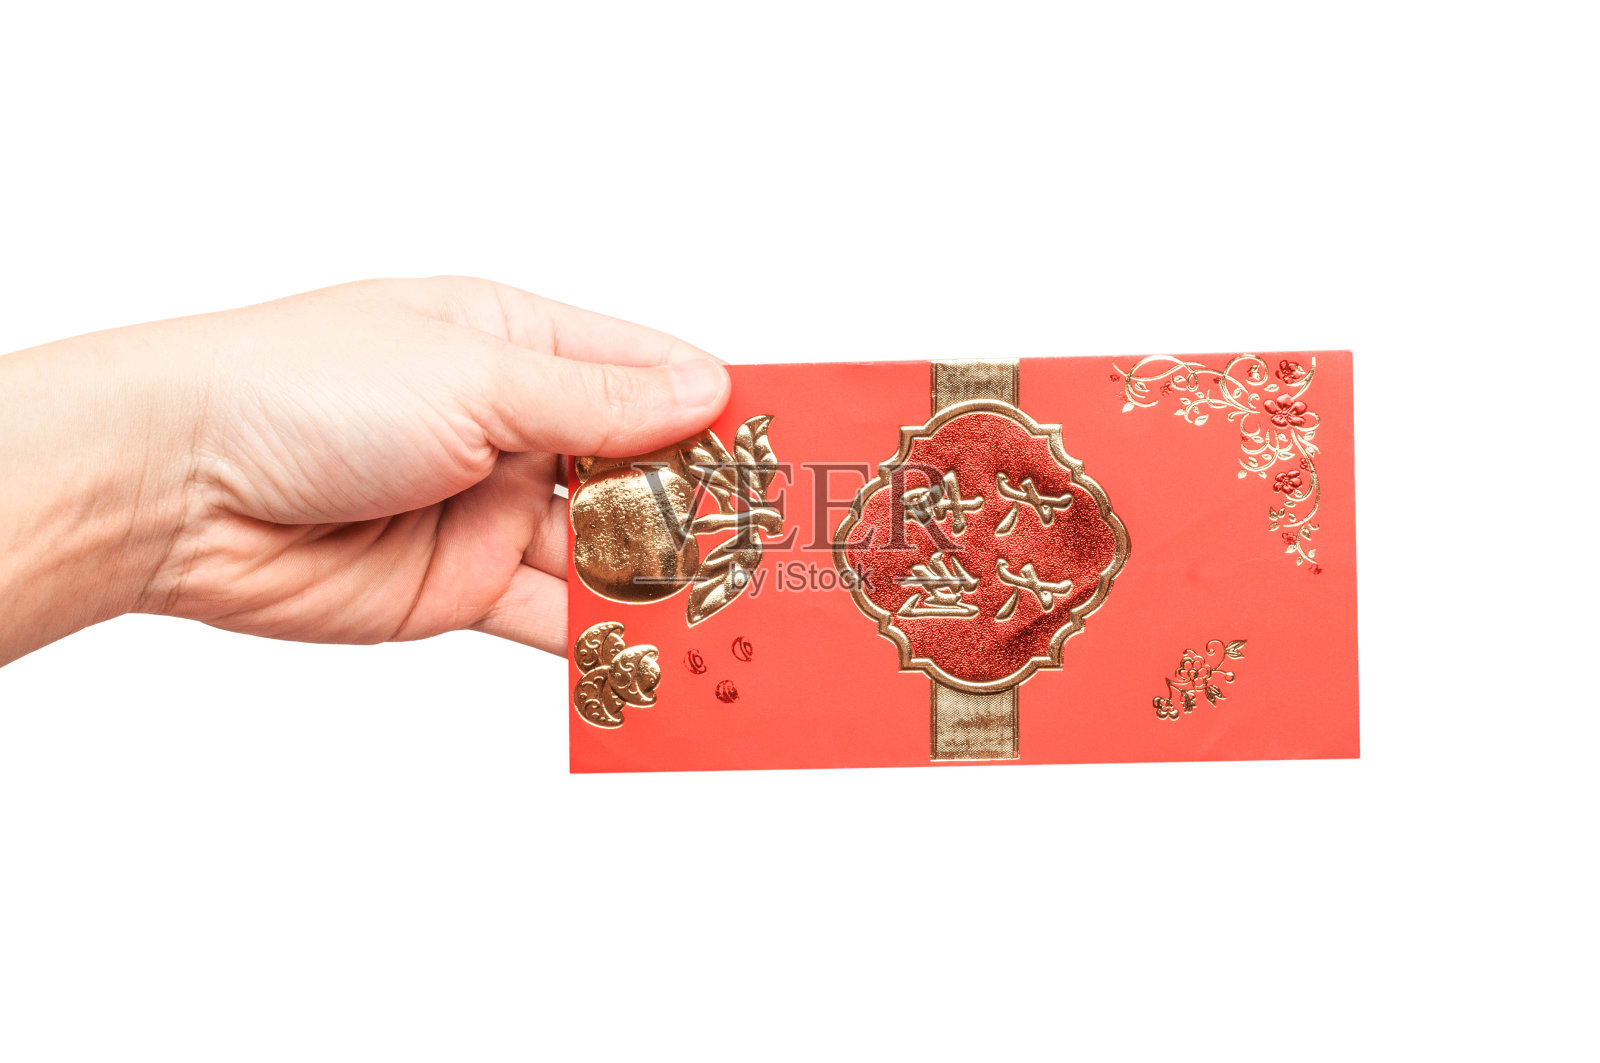 中国红包(或红包)，中国新年和农历新年的概念。中文意思是“祝你一切顺利”或“祝你好运”照片摄影图片